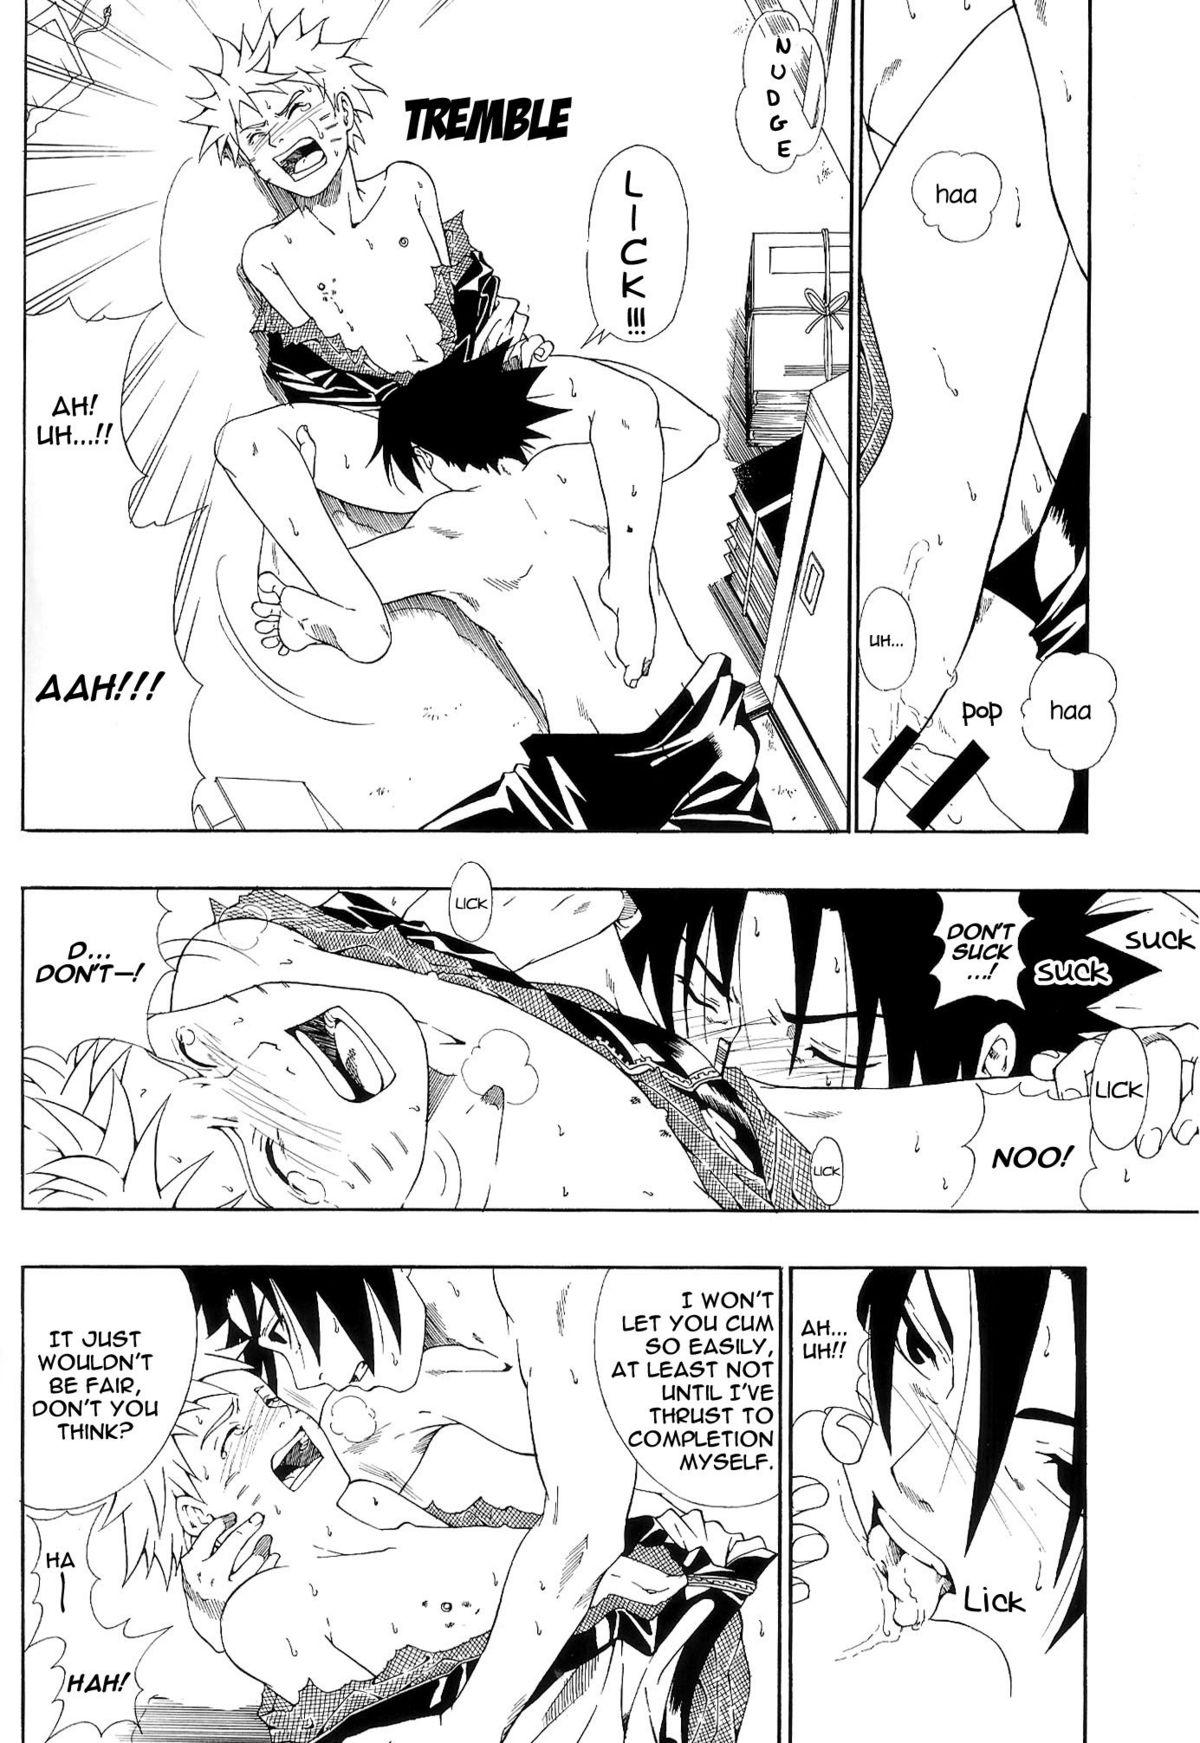 Taiwan ERO ERO²: Volume 1.5 (NARUTO) [Sasuke X Naruto] YAOI -ENG- - Naruto Cfnm - Page 9